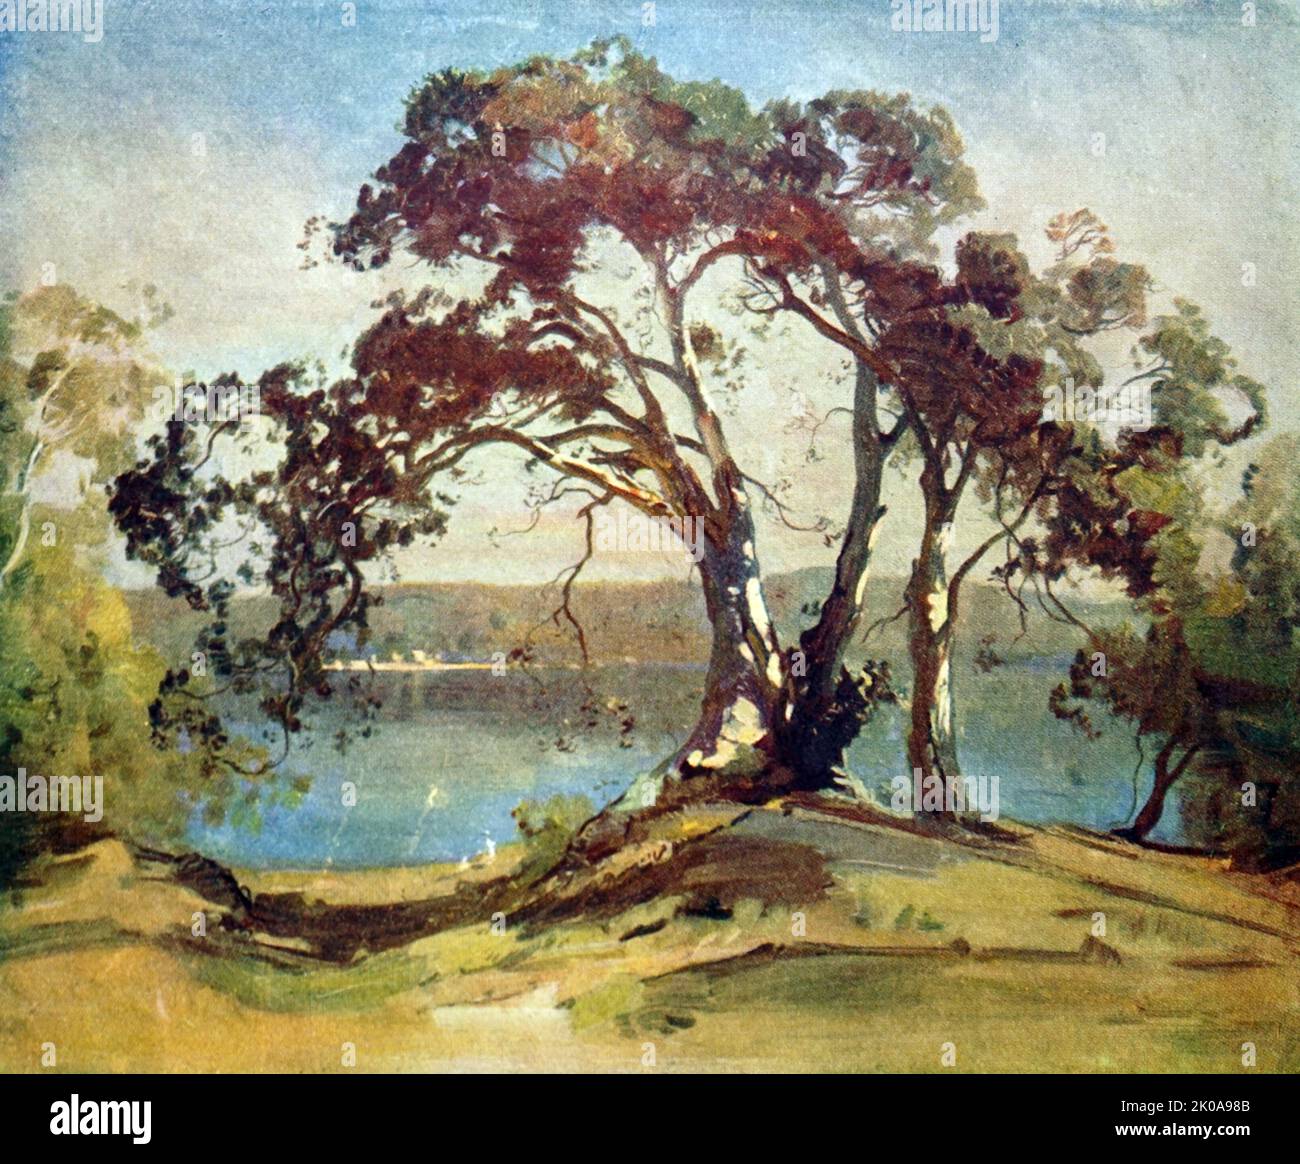 Riesiger Feigenbaum, Port Hacking. Ölgemälde von Penleigh Boyd. Theodore Penleigh Boyd (15. August 1890 - 27. November 1923) war ein in Großbritannien geborener australischer Künstler Stockfoto